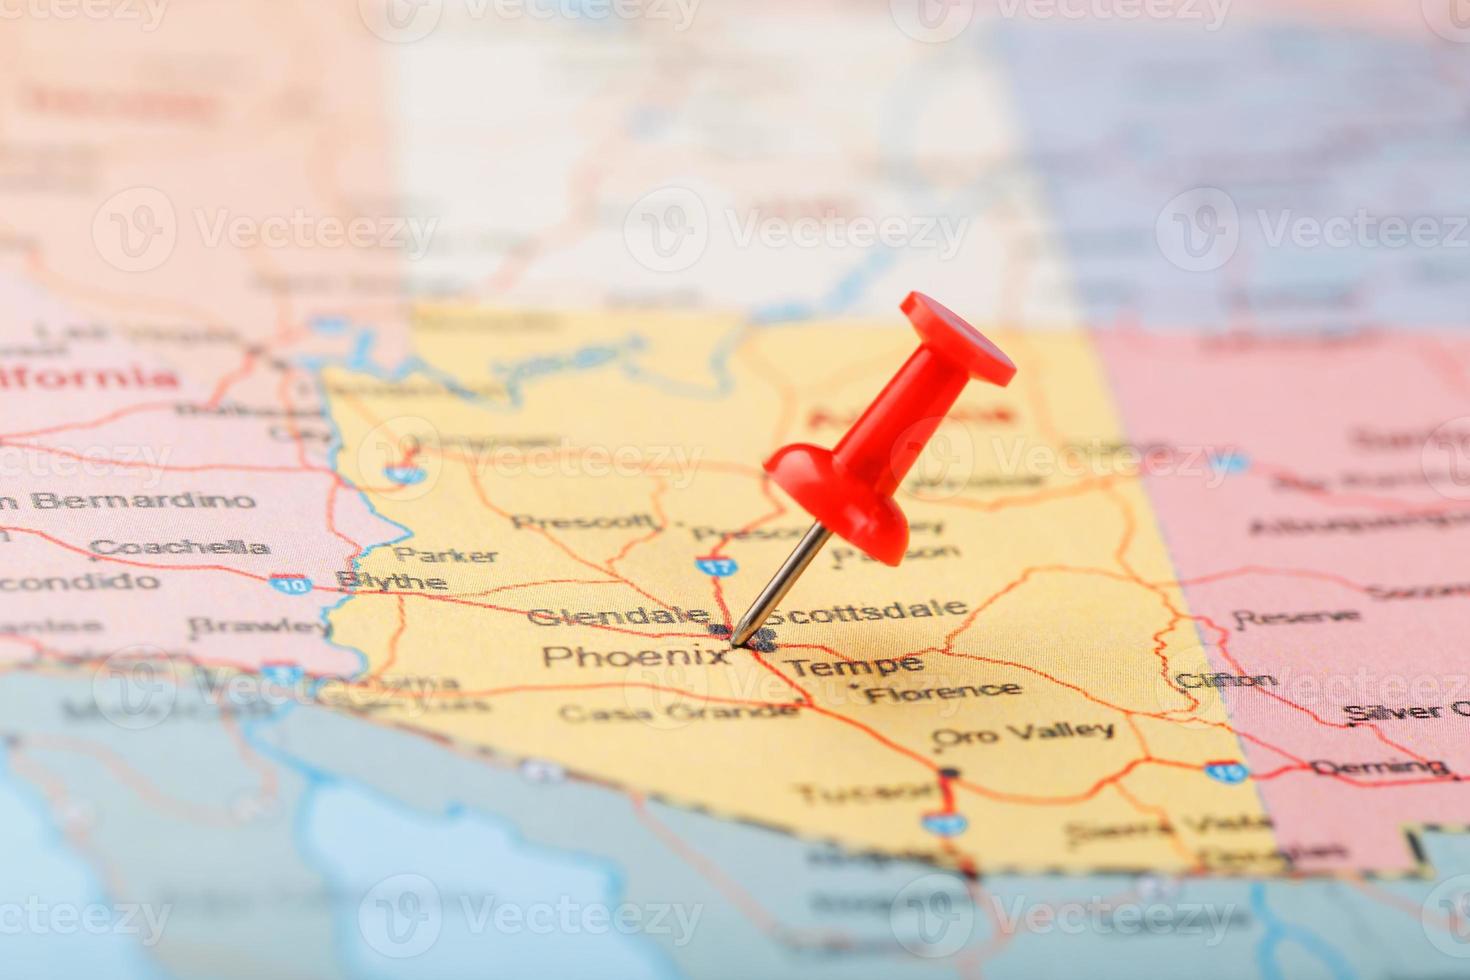 agulha clerical vermelha em um mapa dos eua, arizona e a capital fênix. fechar mapa de orizona com red tack foto